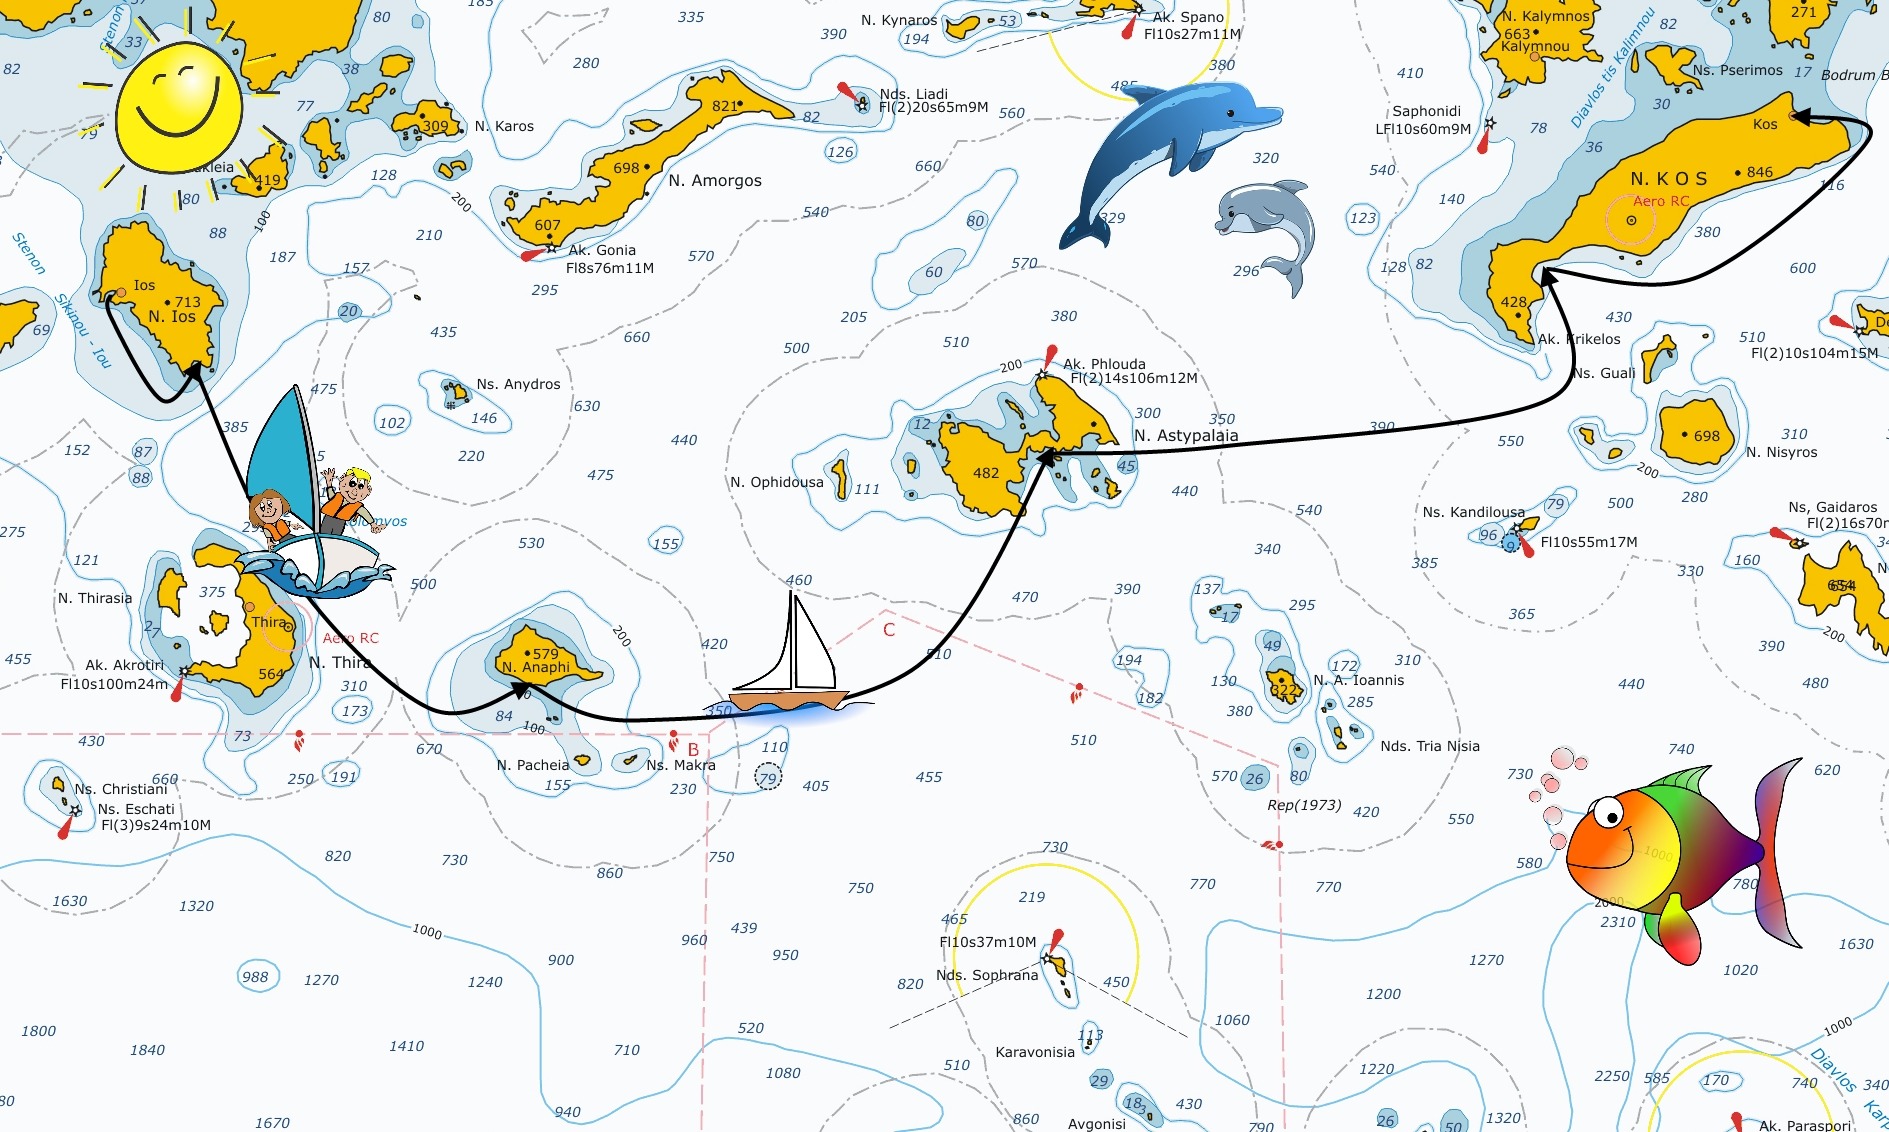 grecia in barca a vela ios kos - Pagina Itinerari/ios_kos